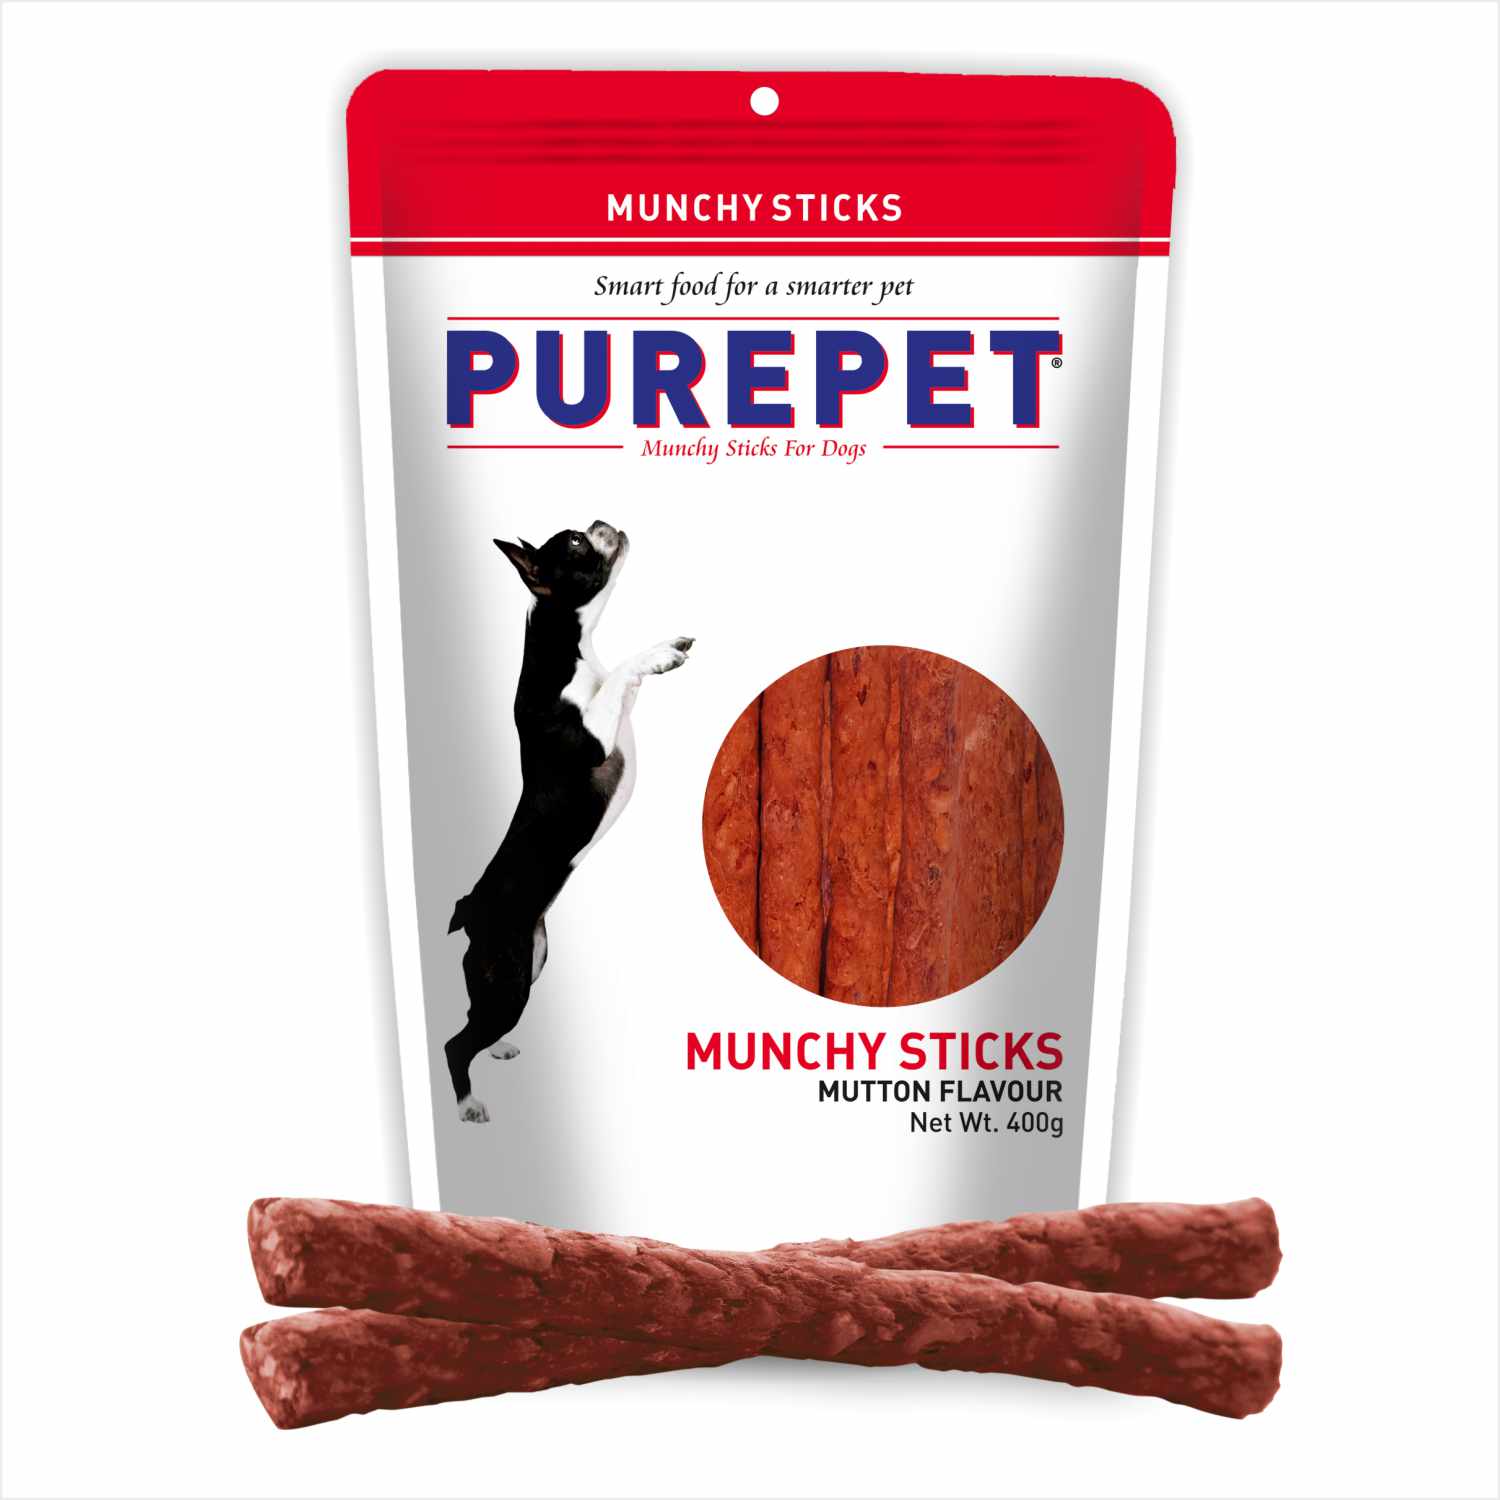 Purepet Mutton Flavour Munchy Sticks Dog Treat